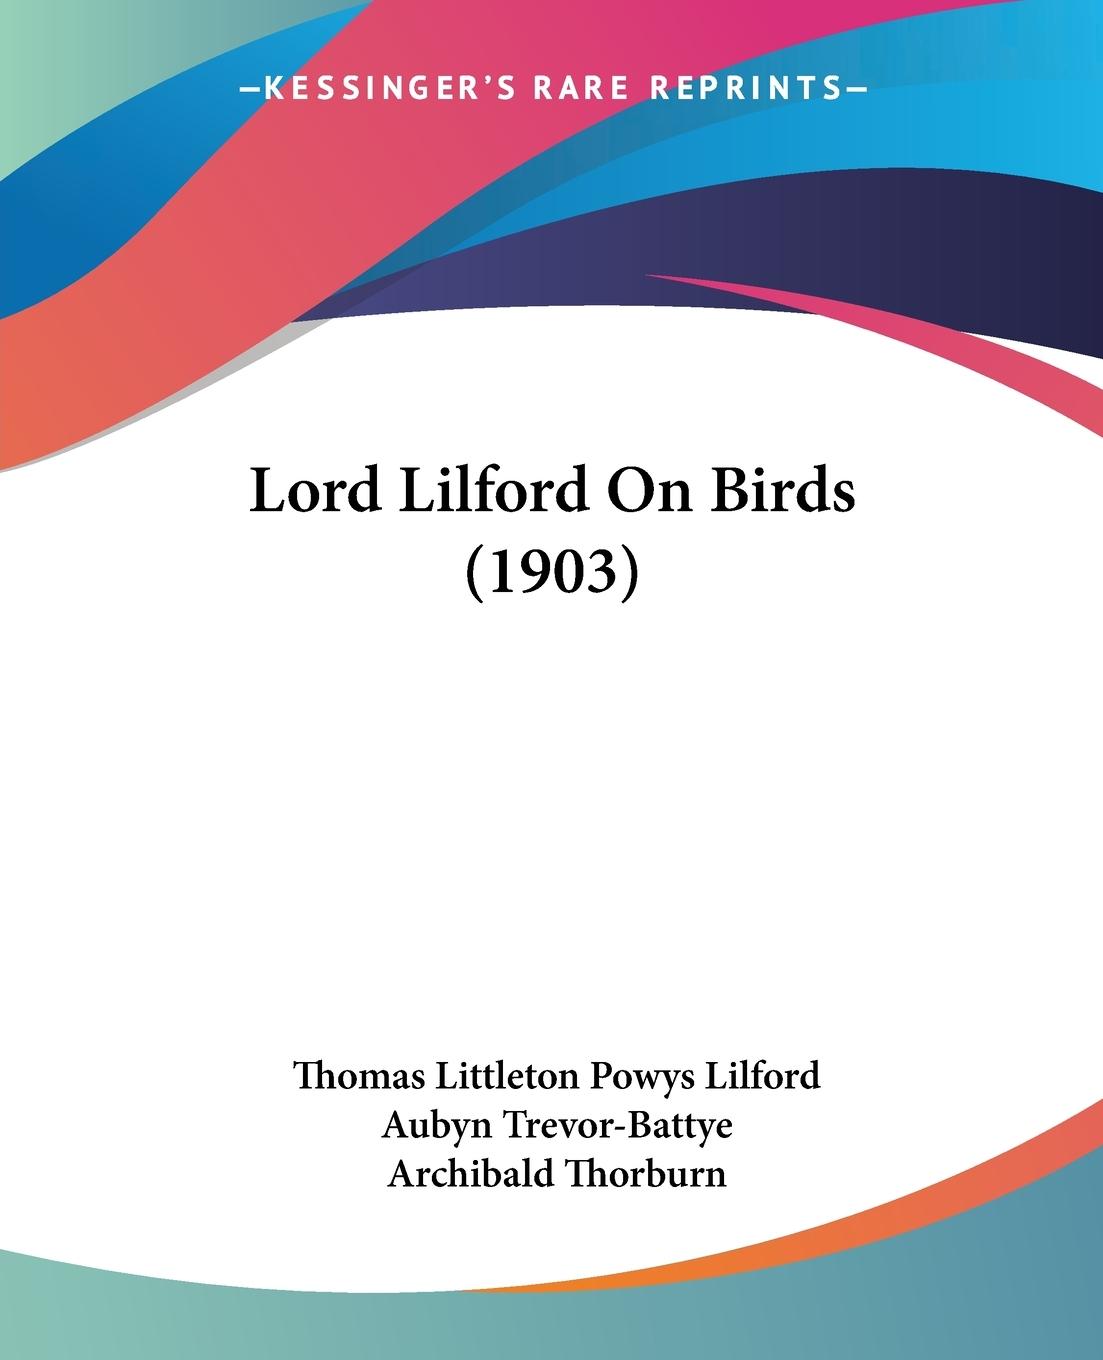 Lord Lilford On Birds (1903) - Lilford, Thomas Littleton Powys